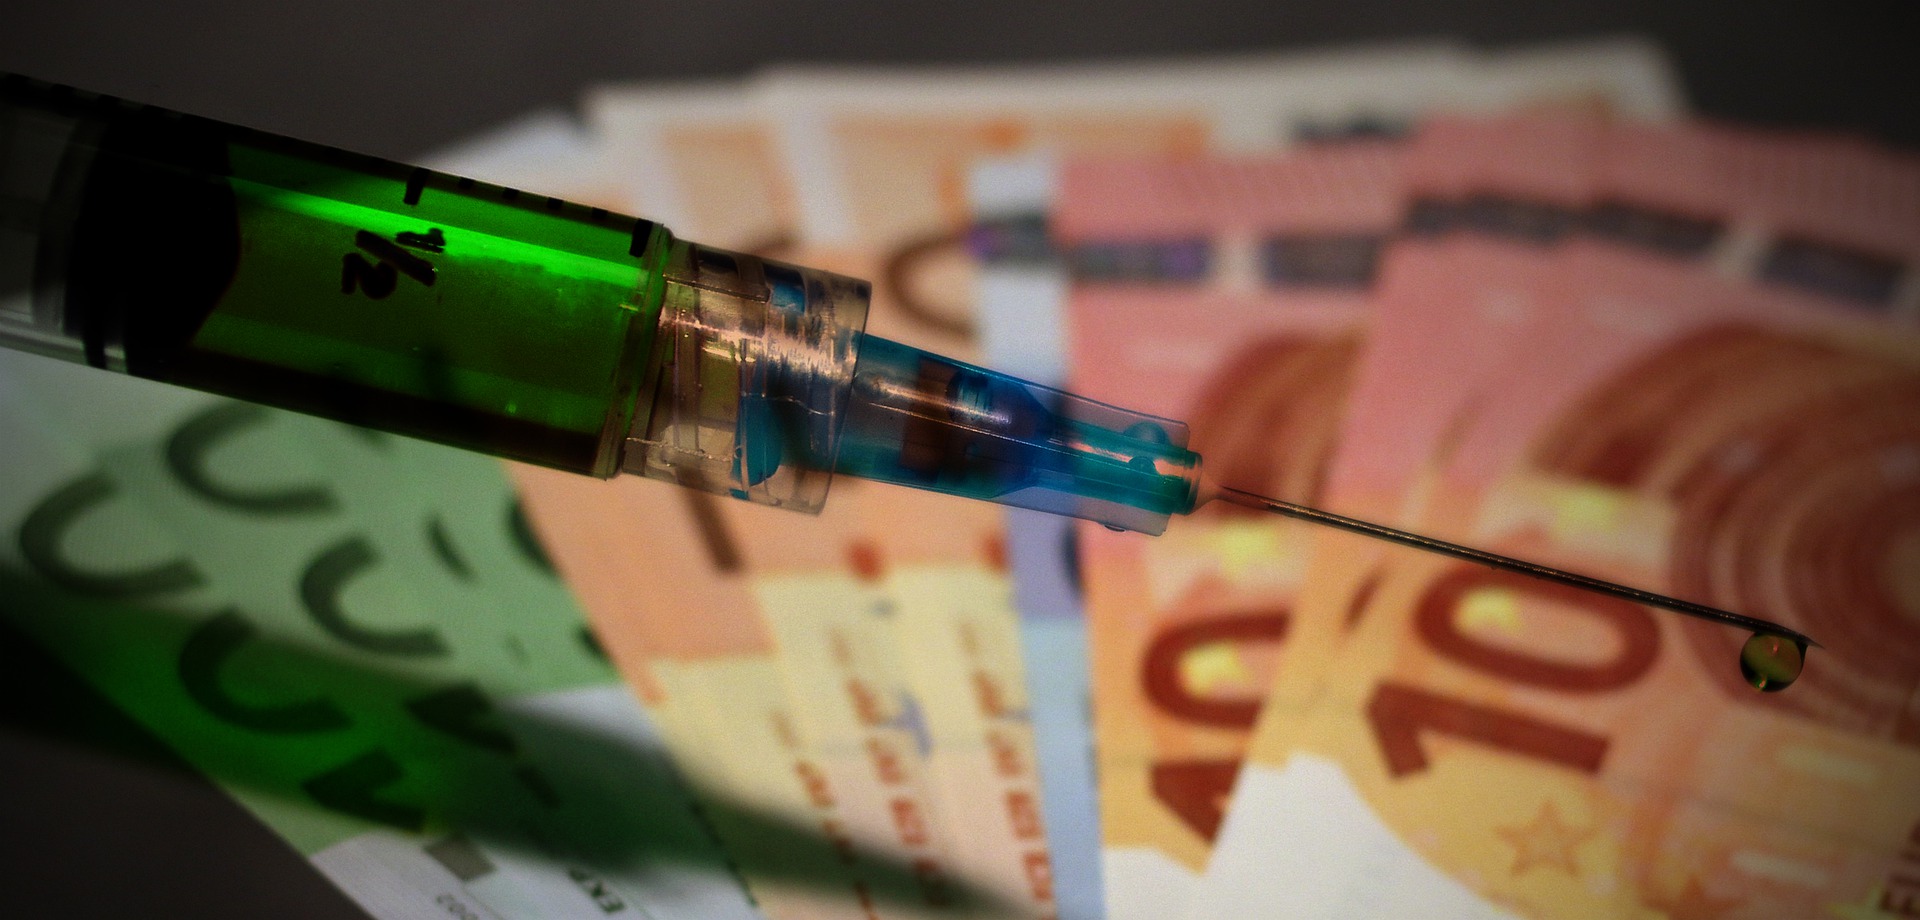 Γιατί επιμένουν οι κυβερνήσεις για προνόμια σε εμβολιασμένους: Οι αυξήσεις σοκ στα έσοδα των «κολοσσών» η απάντηση